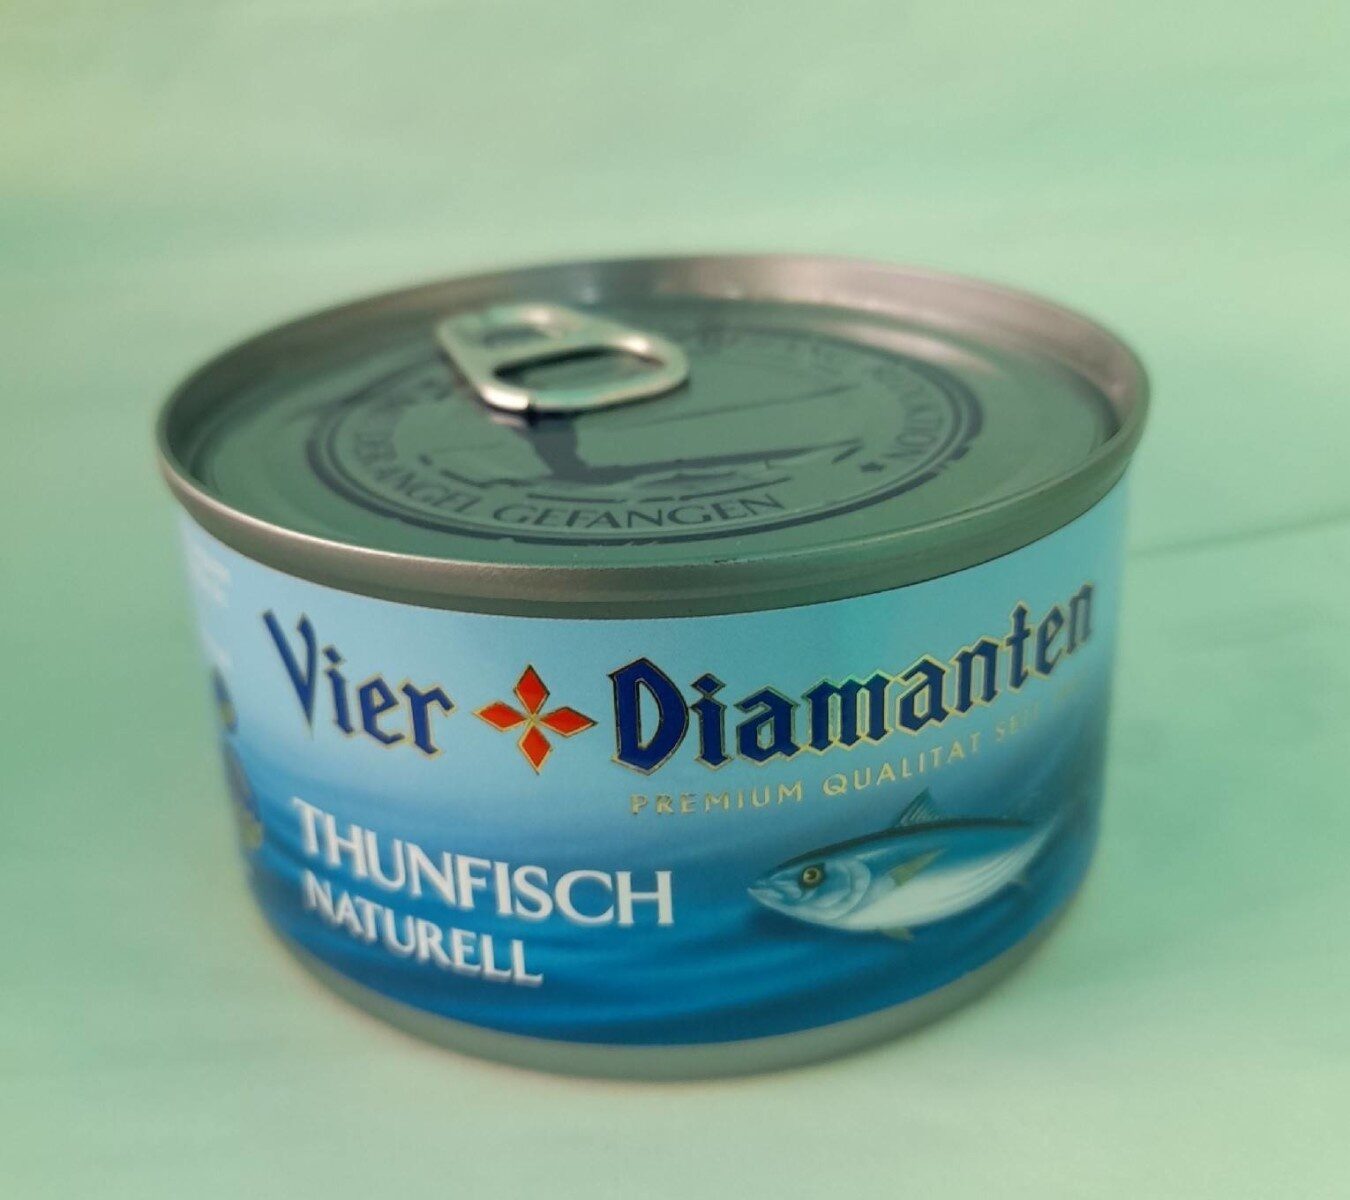 Thunfisch naturell - Produkt